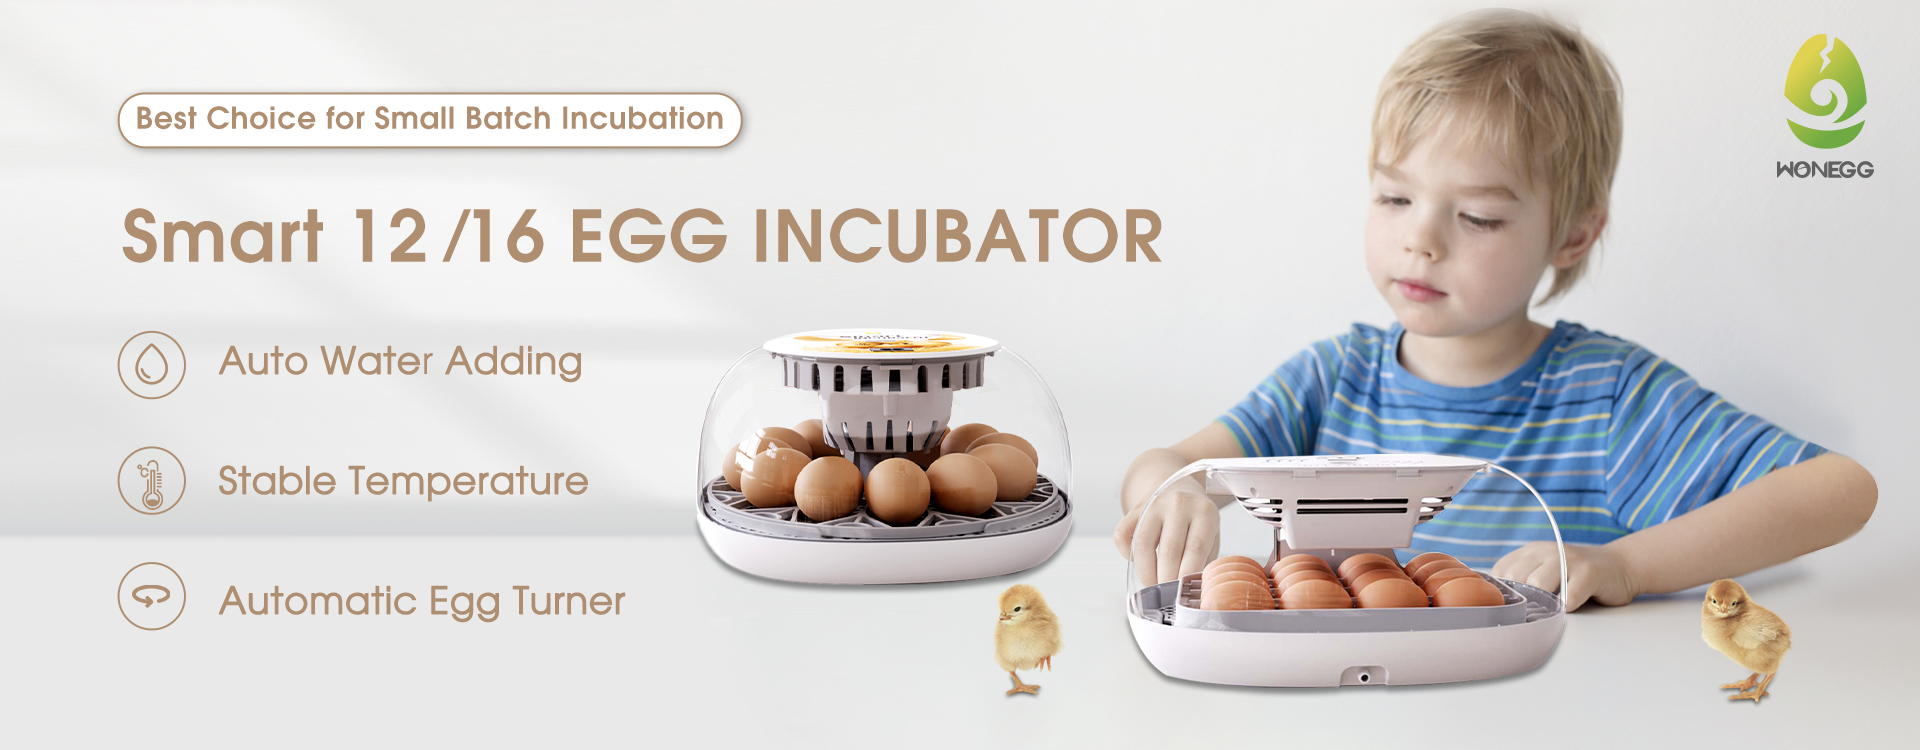 incubatrice smart 12 16 uova